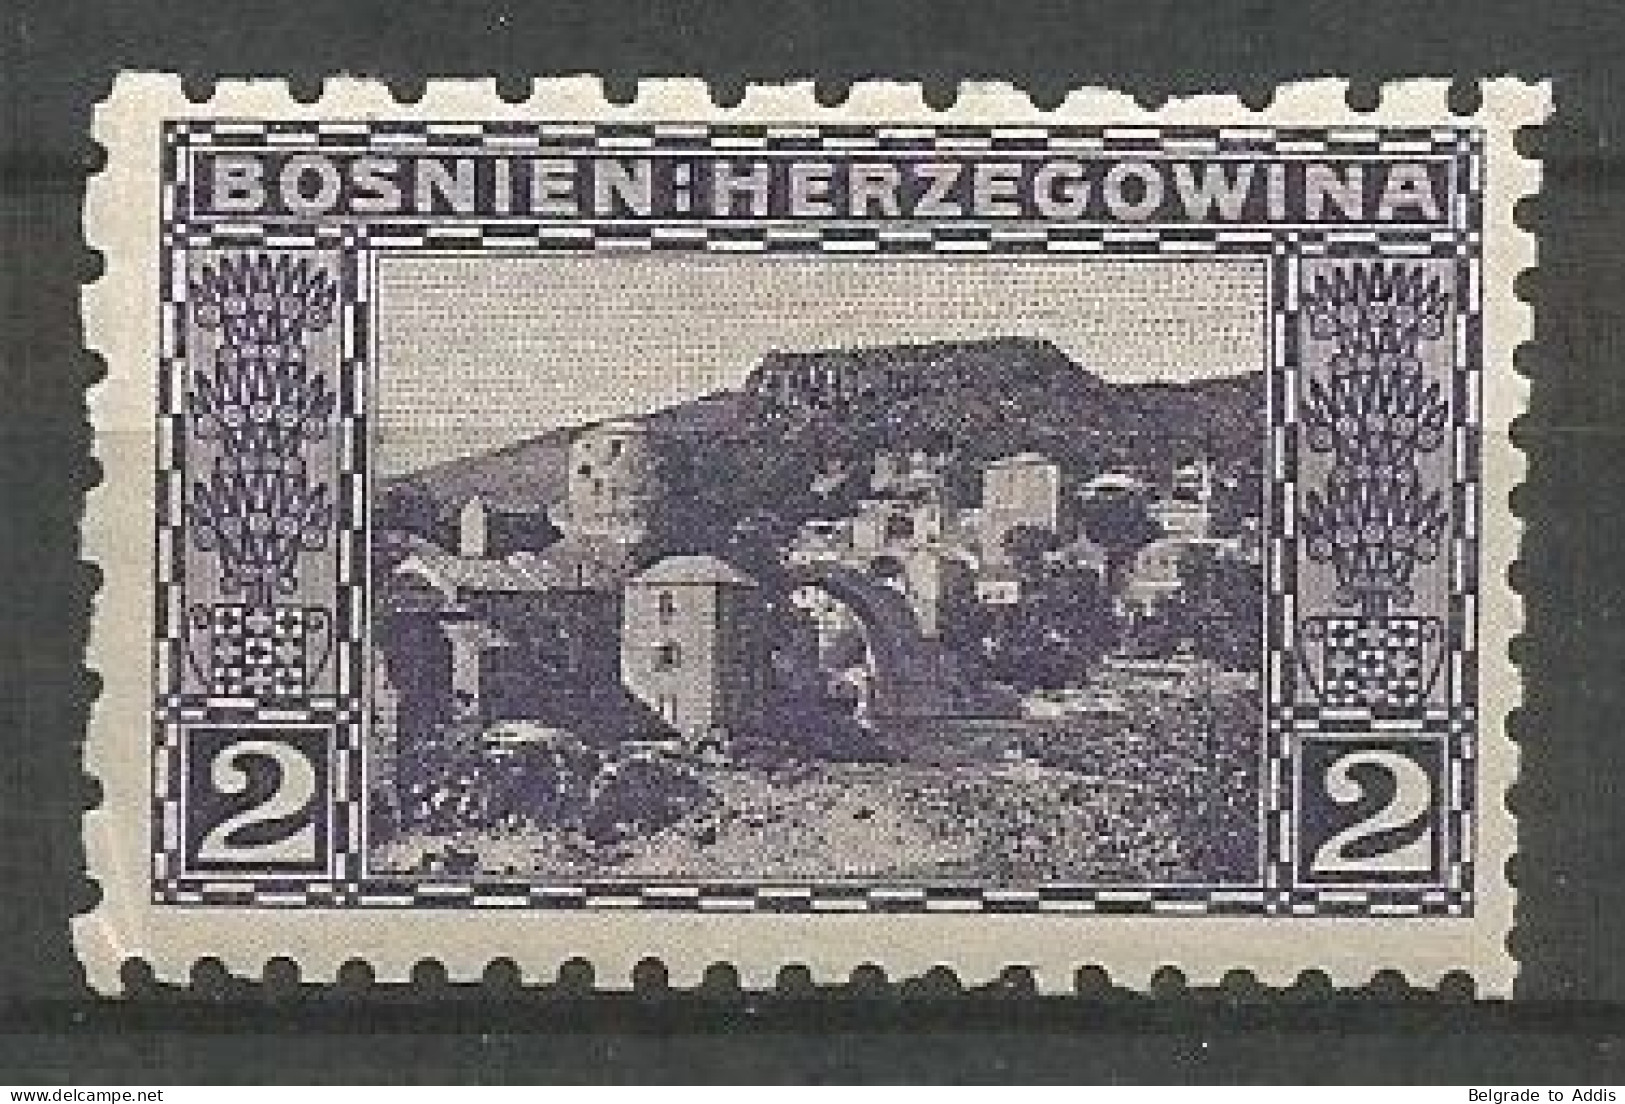 Bosnia Bosnien K.u.K. Austria Hungary Mi.30 Perforation 6½:9¼:9¼:6½ Coleman 1221 MH / * 1906 - Bosnia And Herzegovina